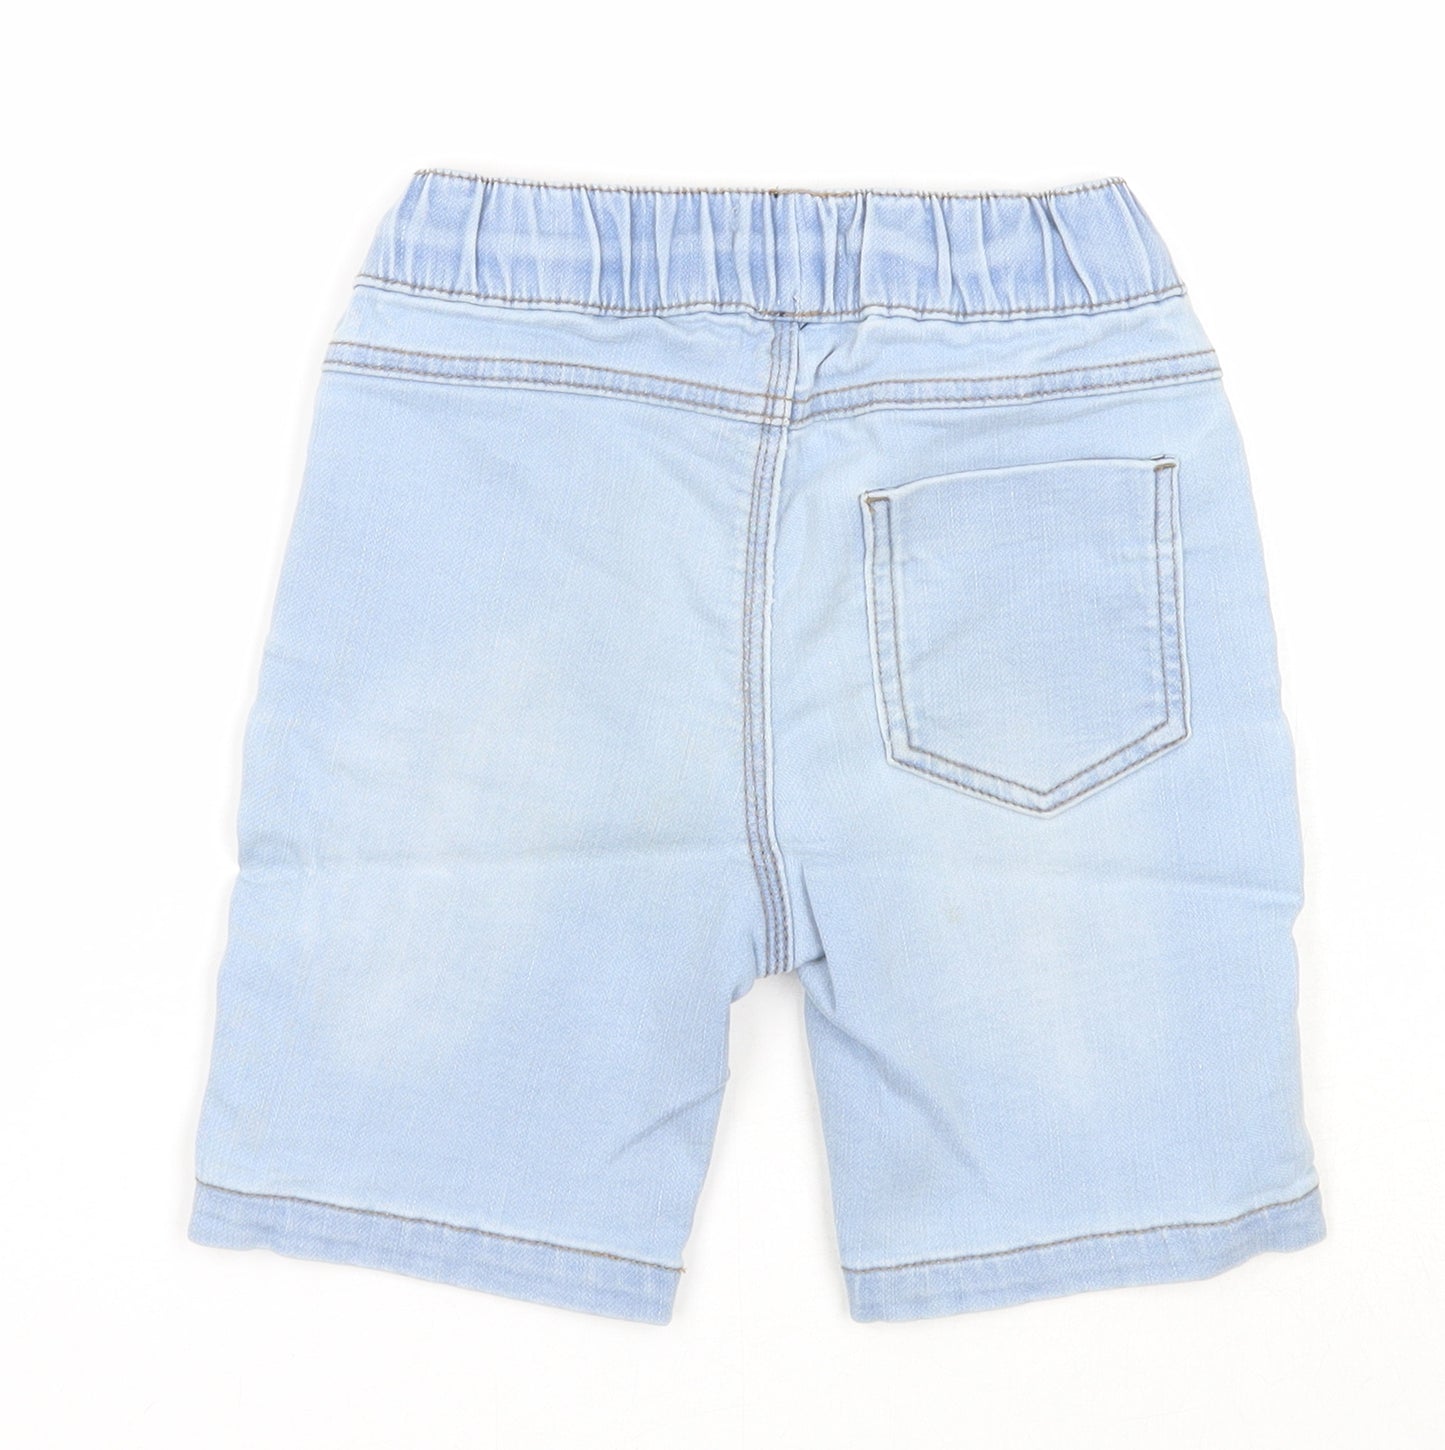 Urban Boys Boys Blue Cotton Bermuda Shorts Size 6 Years Regular Drawstring